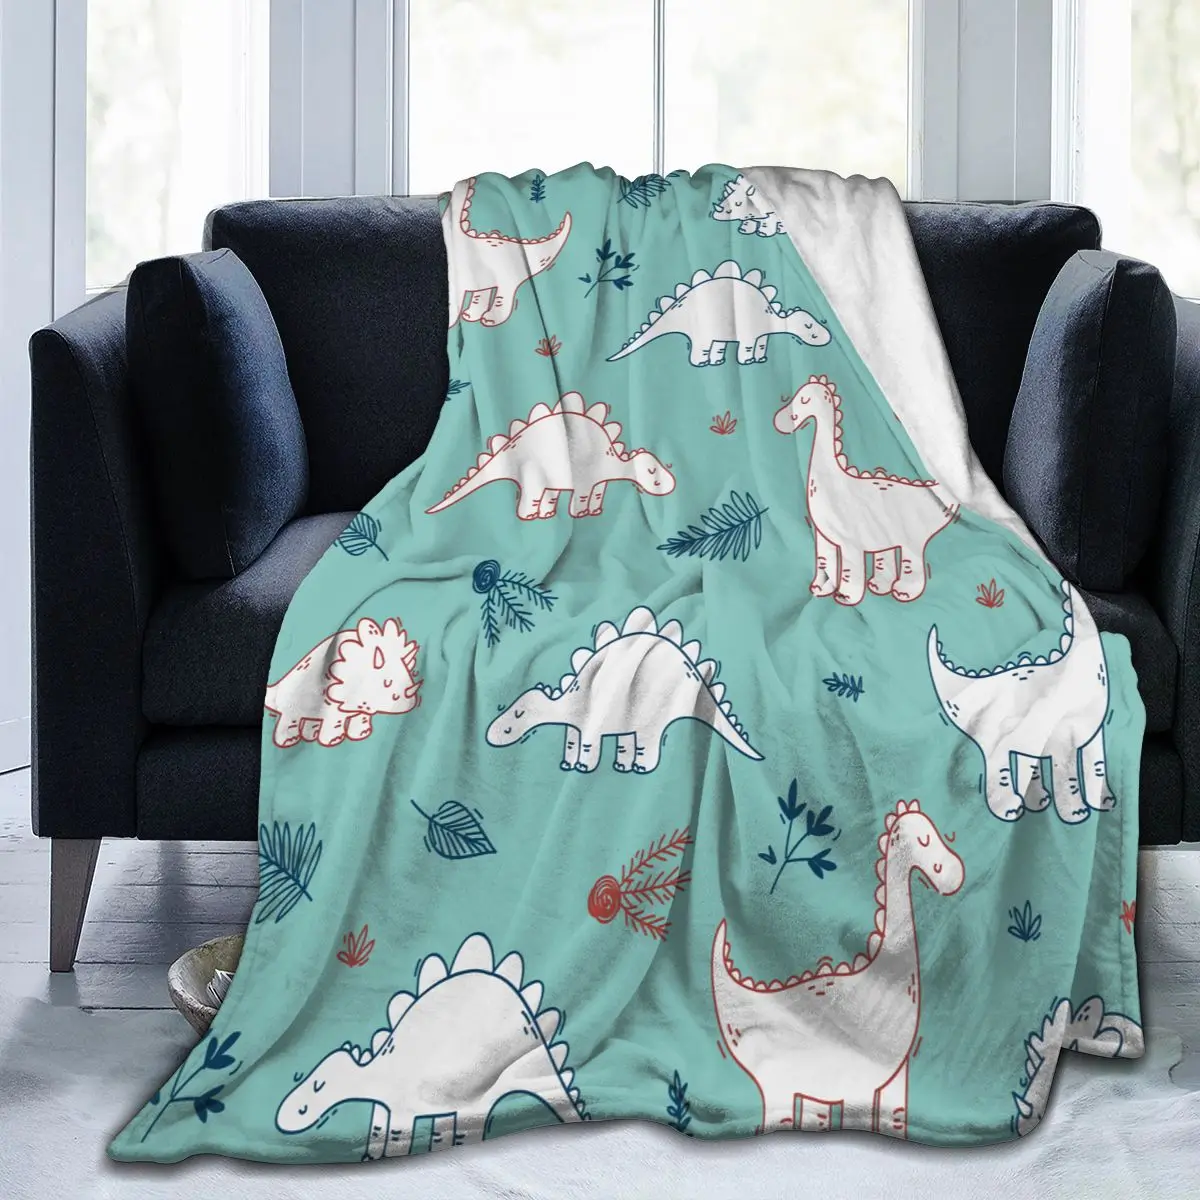 

Мягкое теплое фланелевое одеяло с синим принтом динозавра, переносное зимнее тонкое покрывало для кровати и дивана